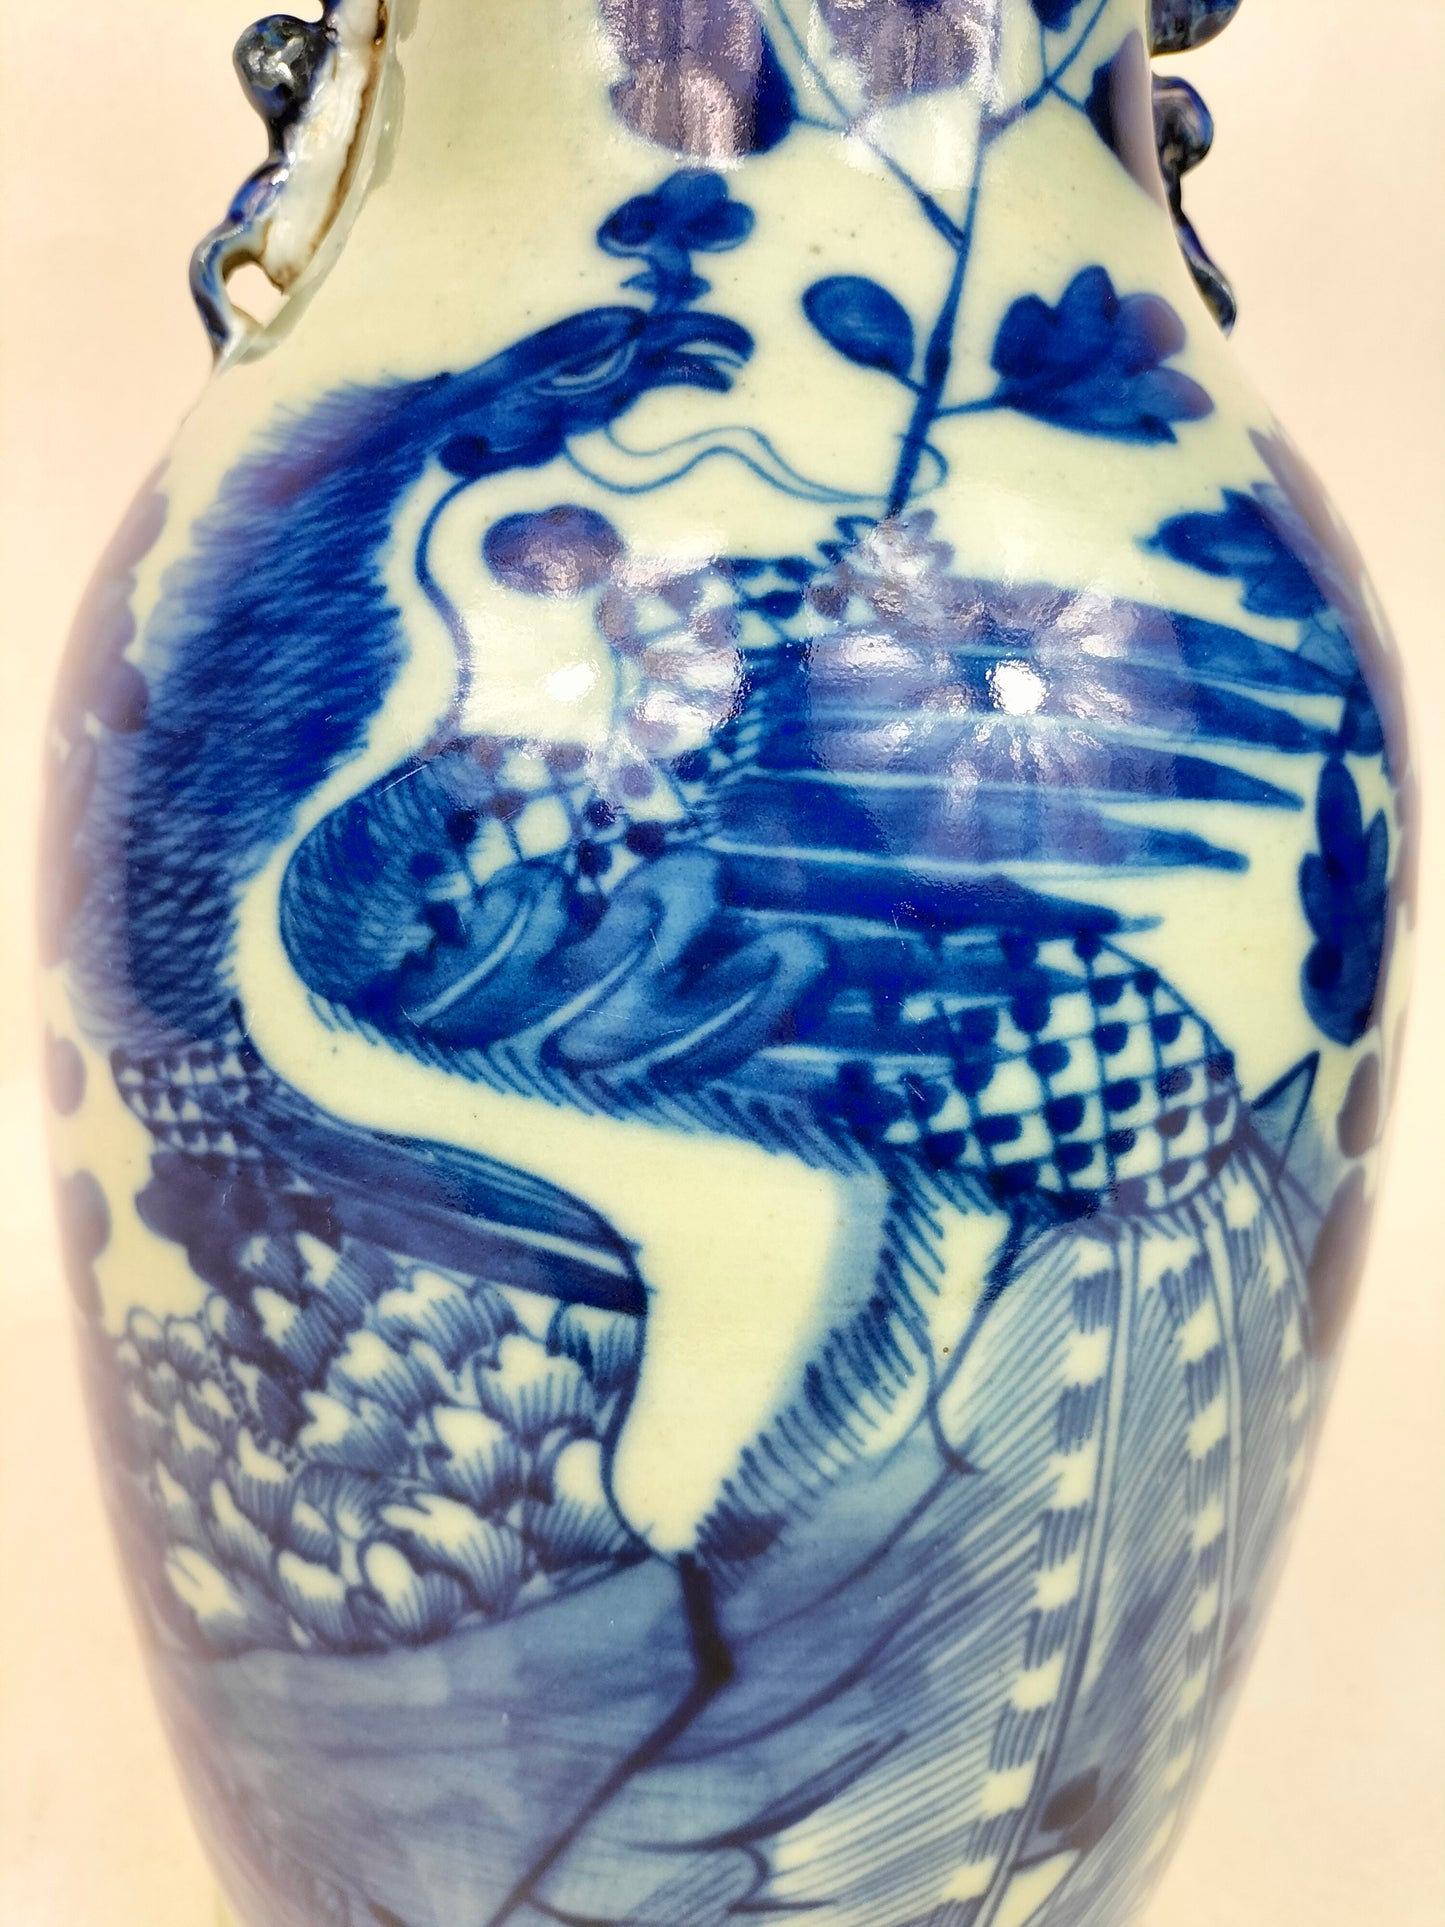 Pasu celadon Cina antik dihiasi dengan burung dan bunga // Dinasti Qing - abad ke-19